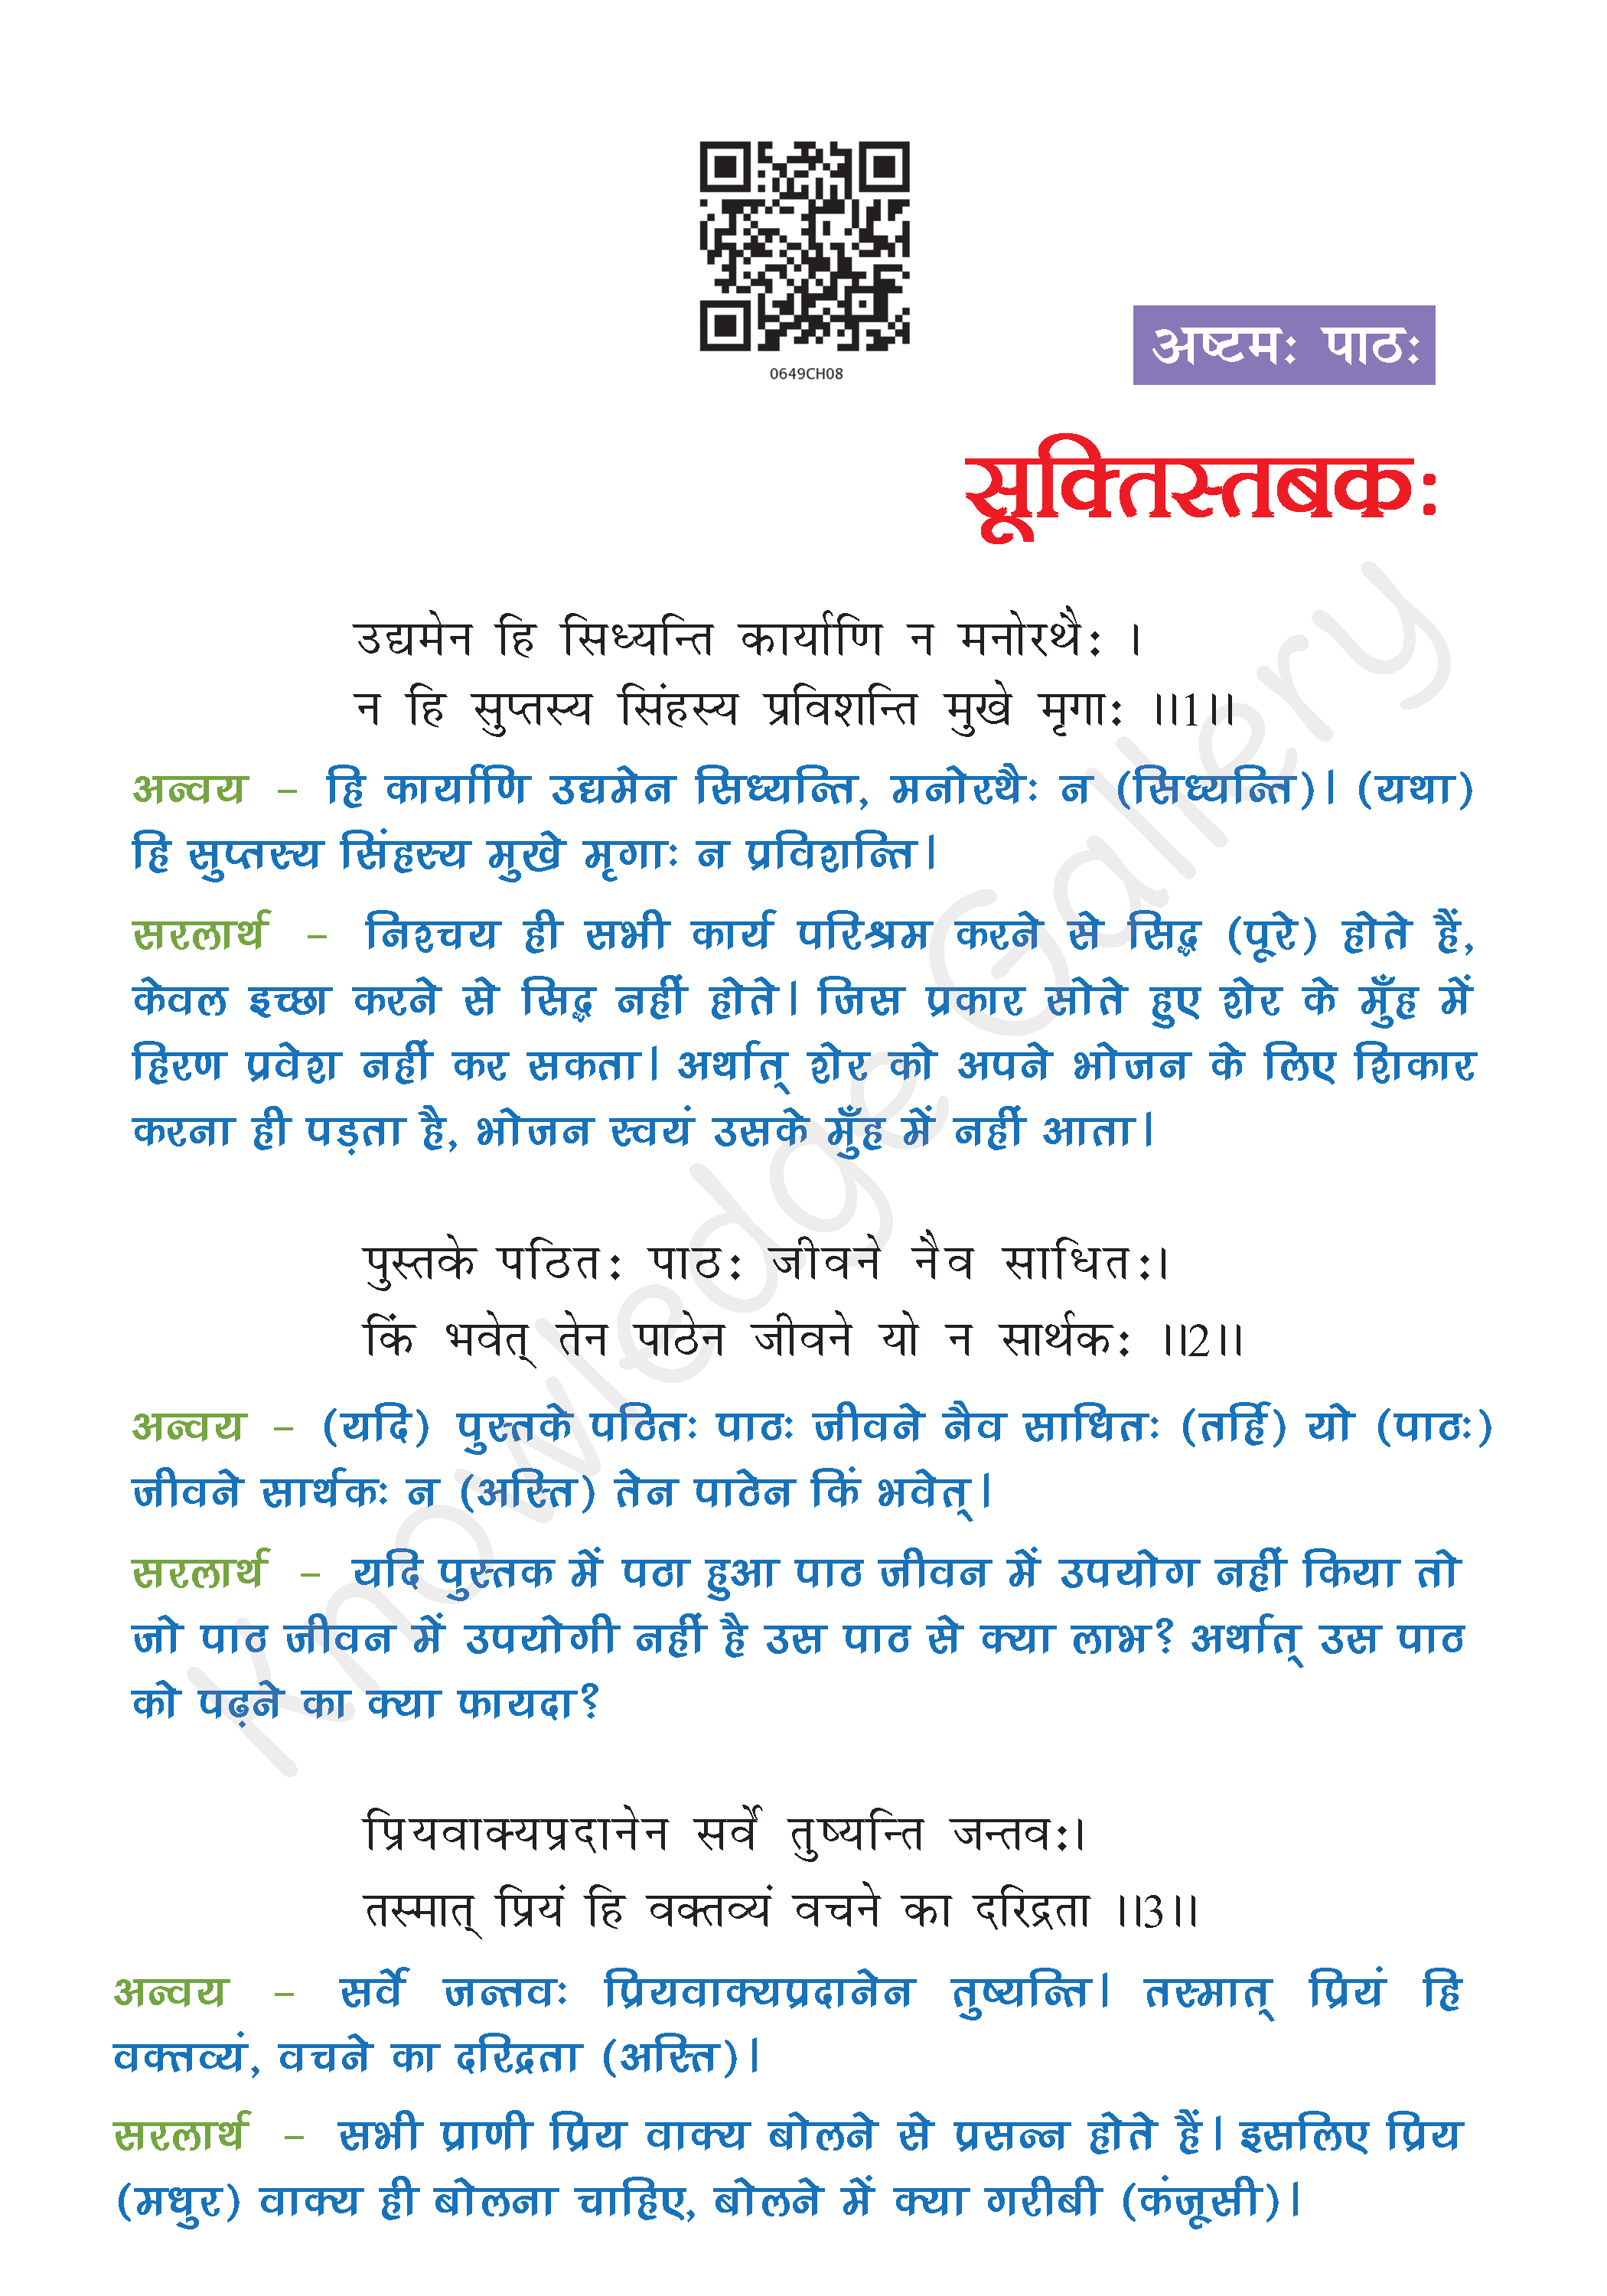 NCERT Solution For Class 6 Sanskrit Chapter 8 part 1